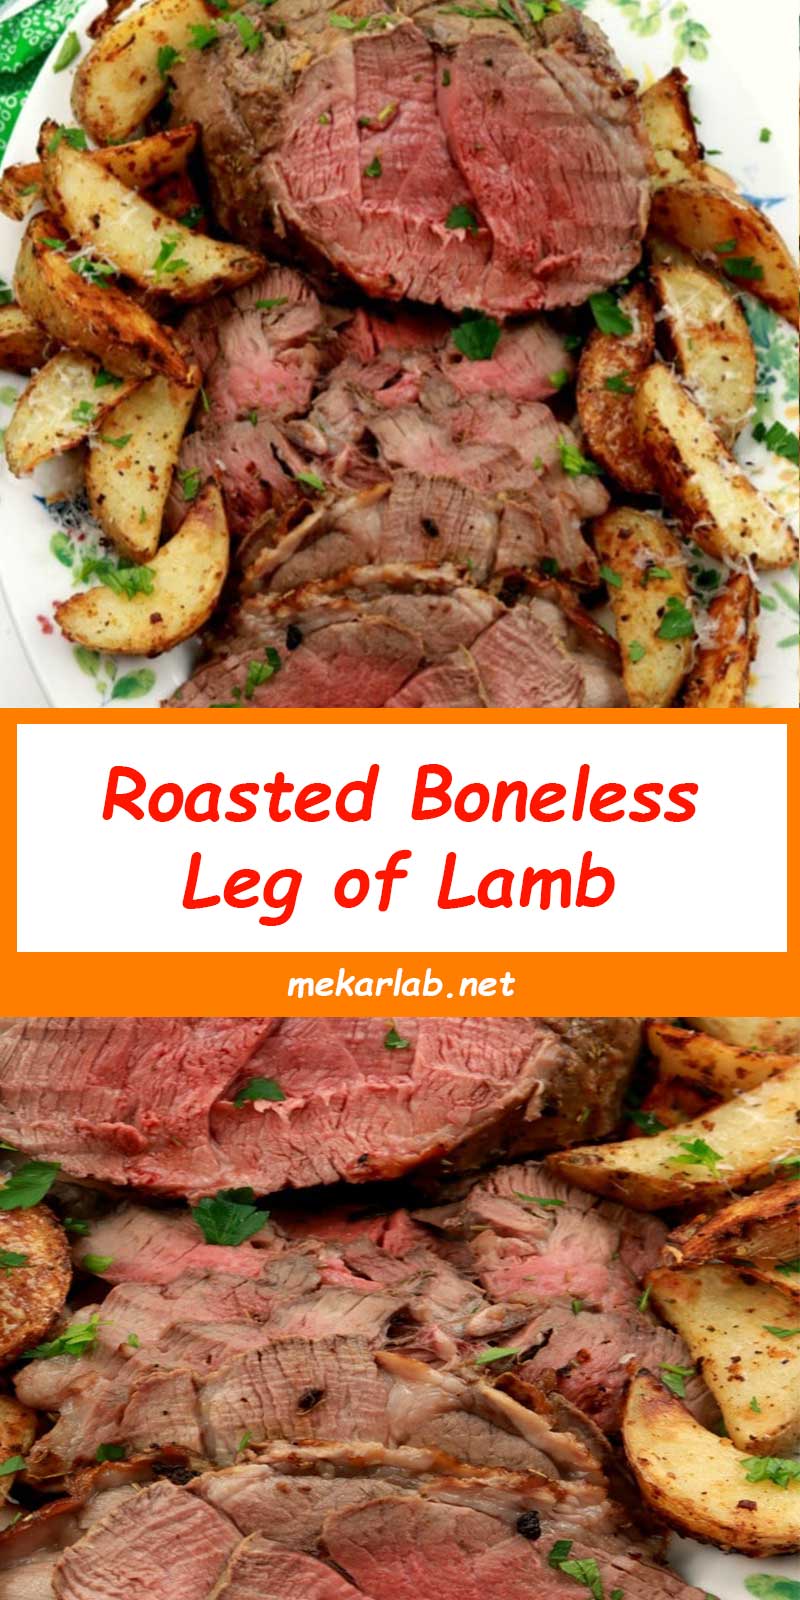 Roasted Boneless Leg of Lamb